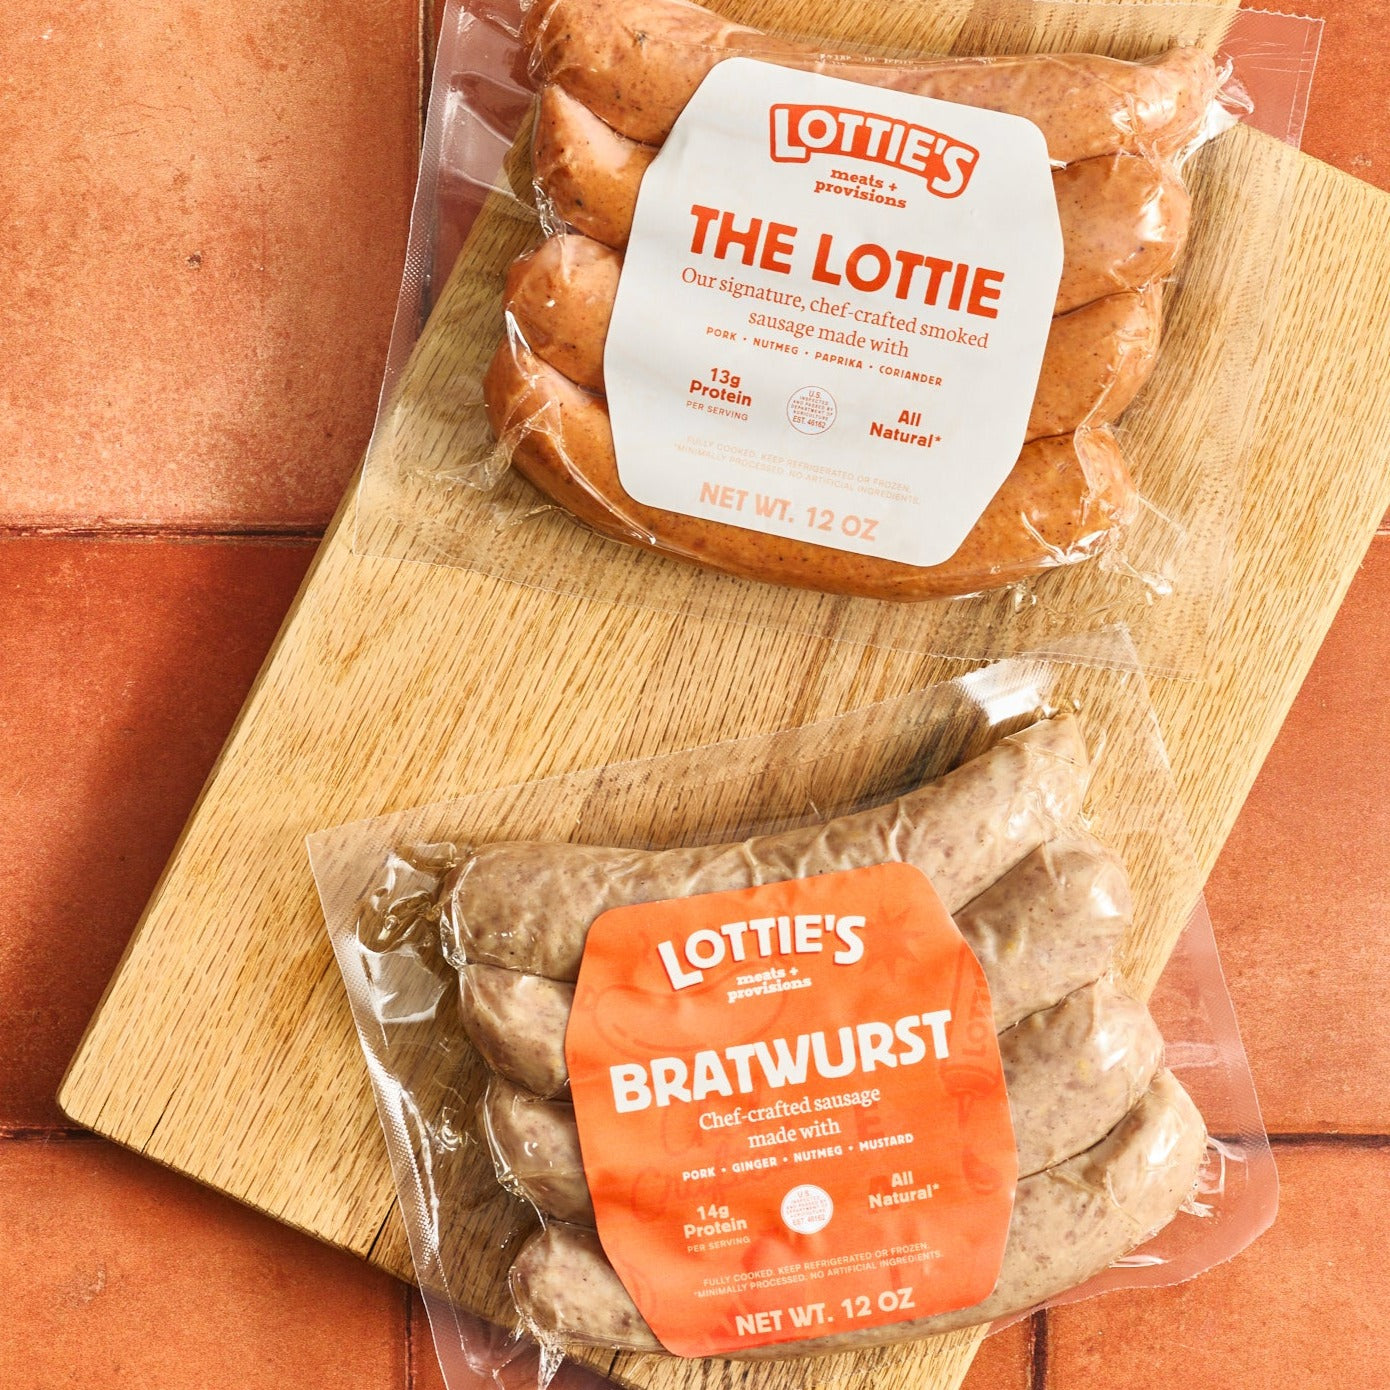 The Lottie & Bratwurst on Board